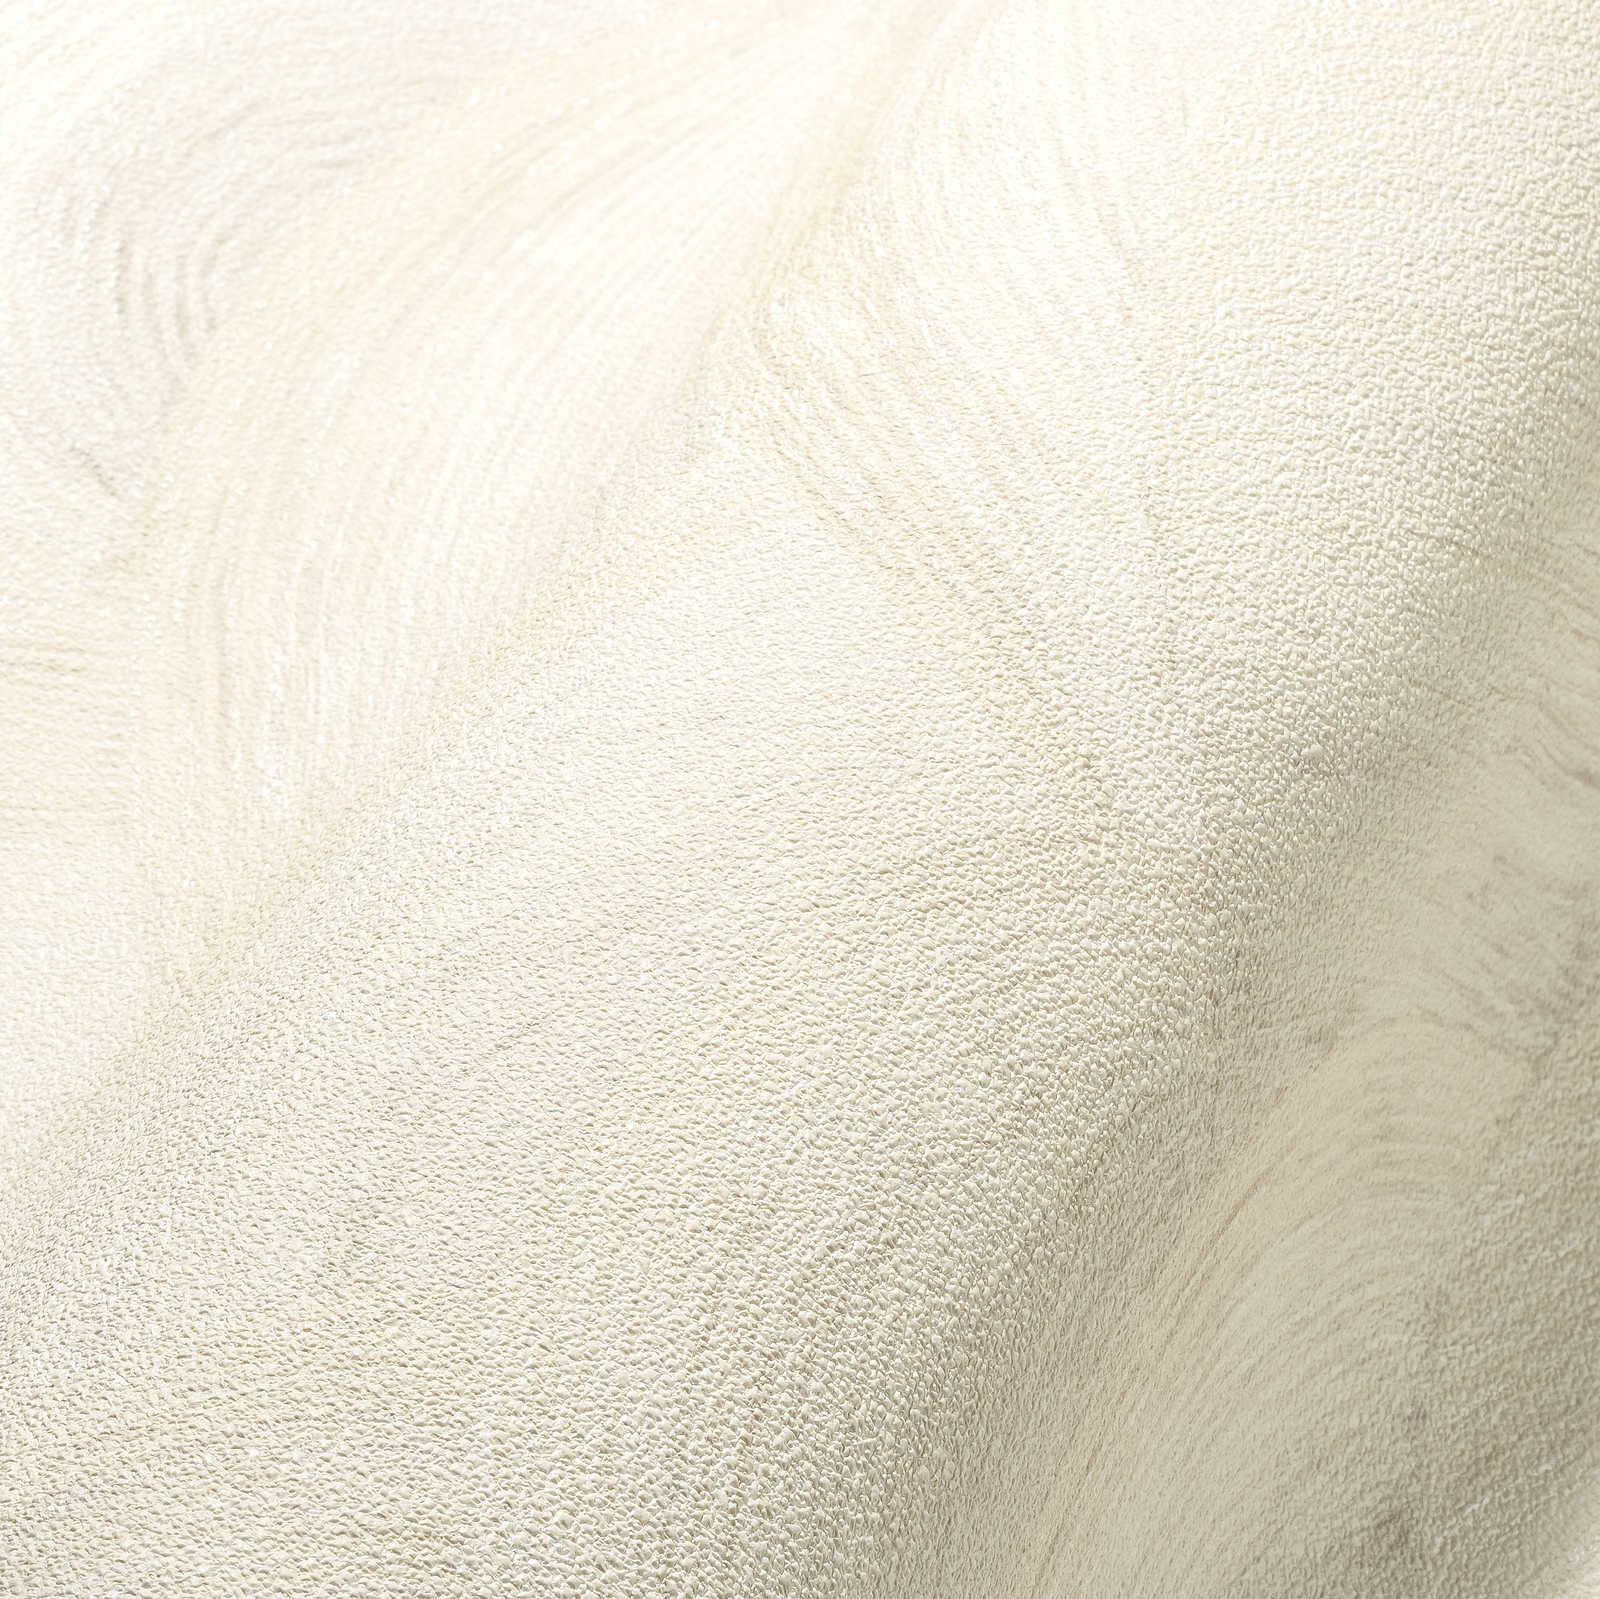             Papier peint intissé avec motif de vagues subtiles - blanc, crème, gris
        